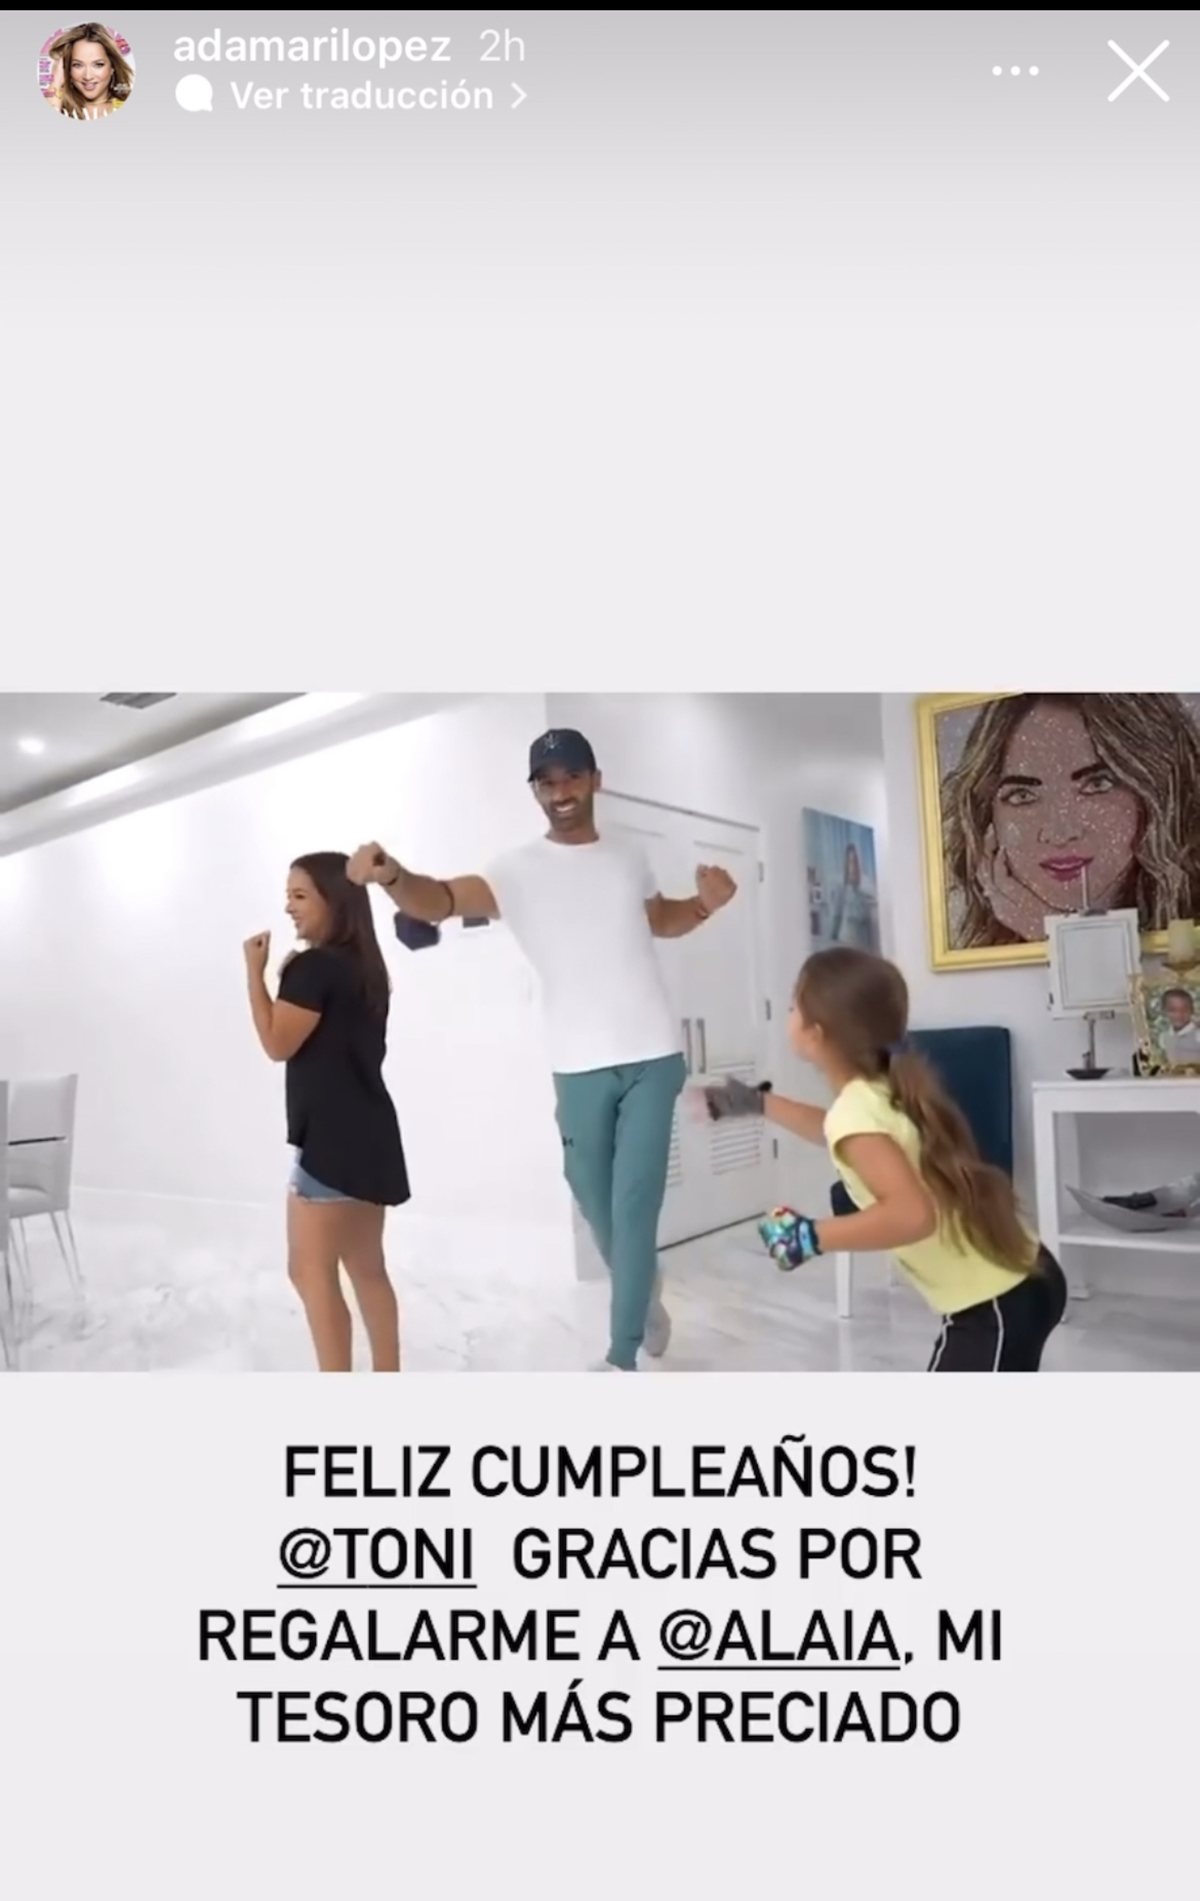 El mensaje de Adamari López a Toni Costa por su cumpleaños